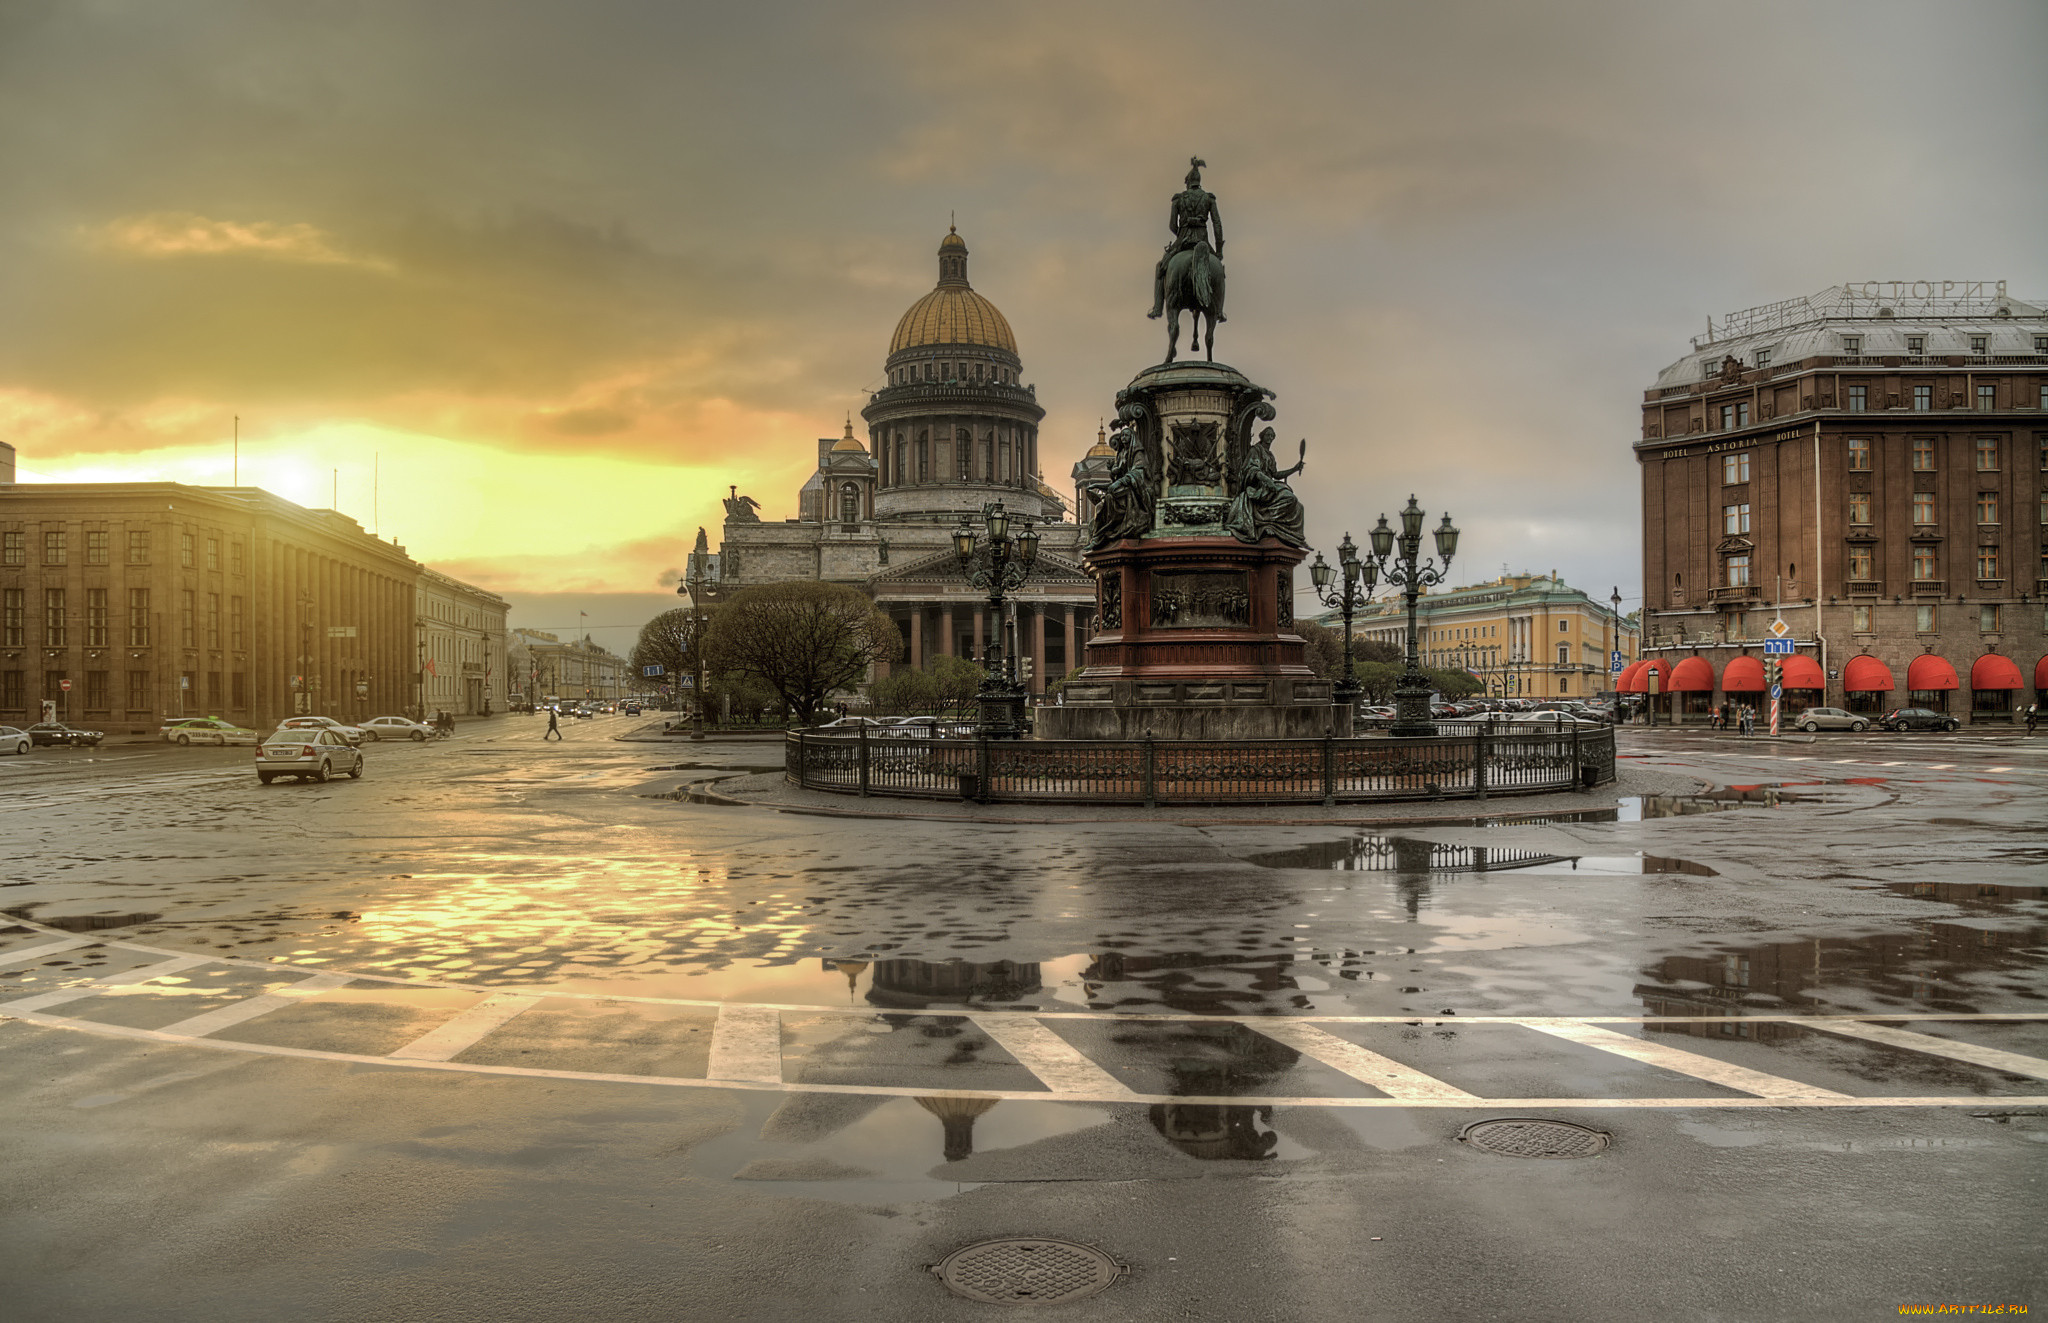 Обои Города Санкт-Петербург, Петергоф (Россия), обои для рабочего стола, фотографии города, санкт-петербург, петергоф , россия, после, дождя, закат Обои для рабочего стола, скачать обои картинки заставки на рабочий стол.